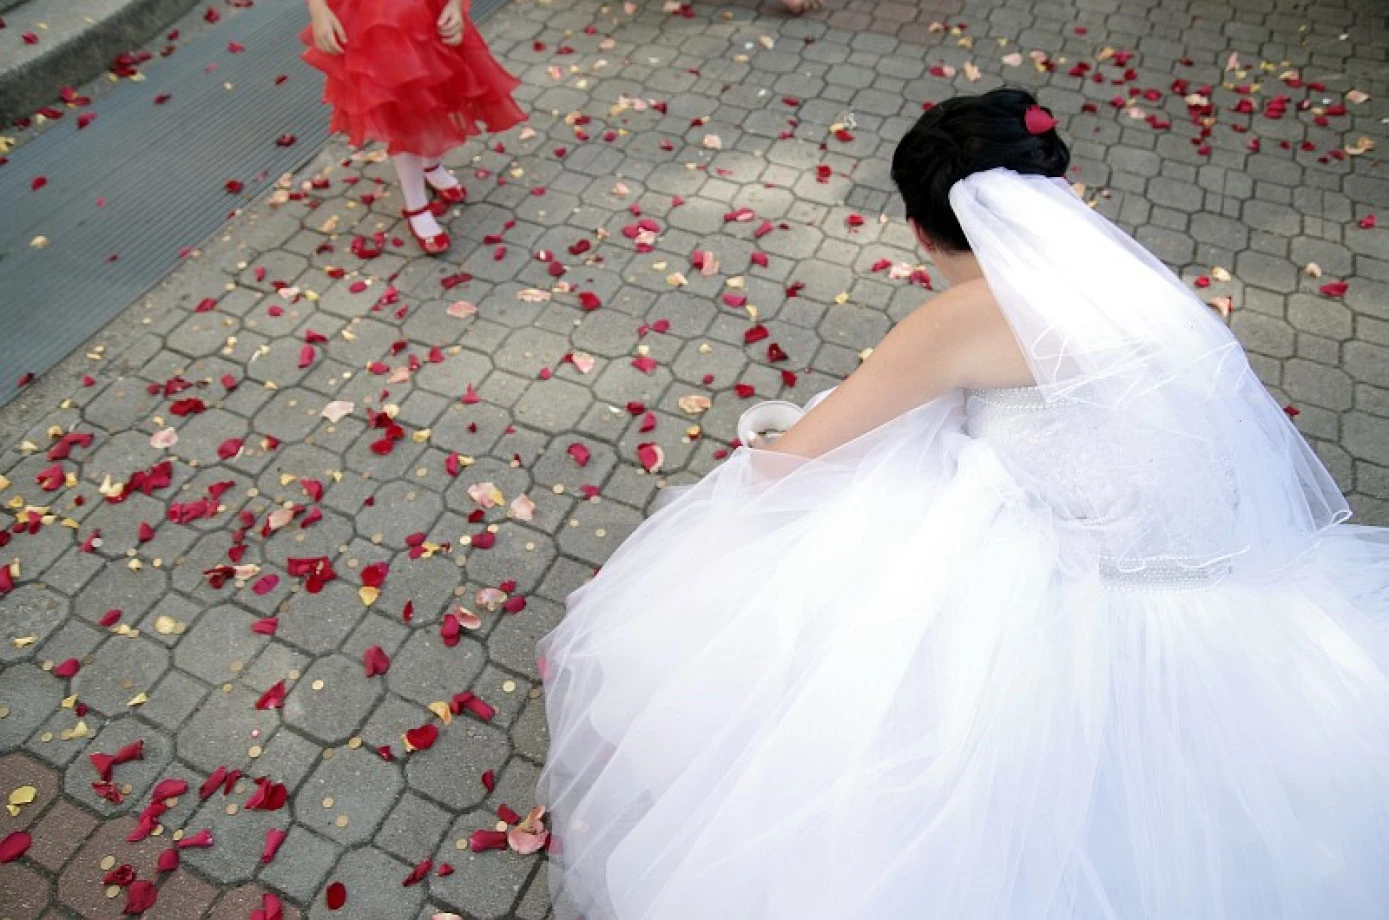 fotograf  robert-kaliszuk portfolio zdjecia slubne inspiracje wesele plener slubny sesja slubna